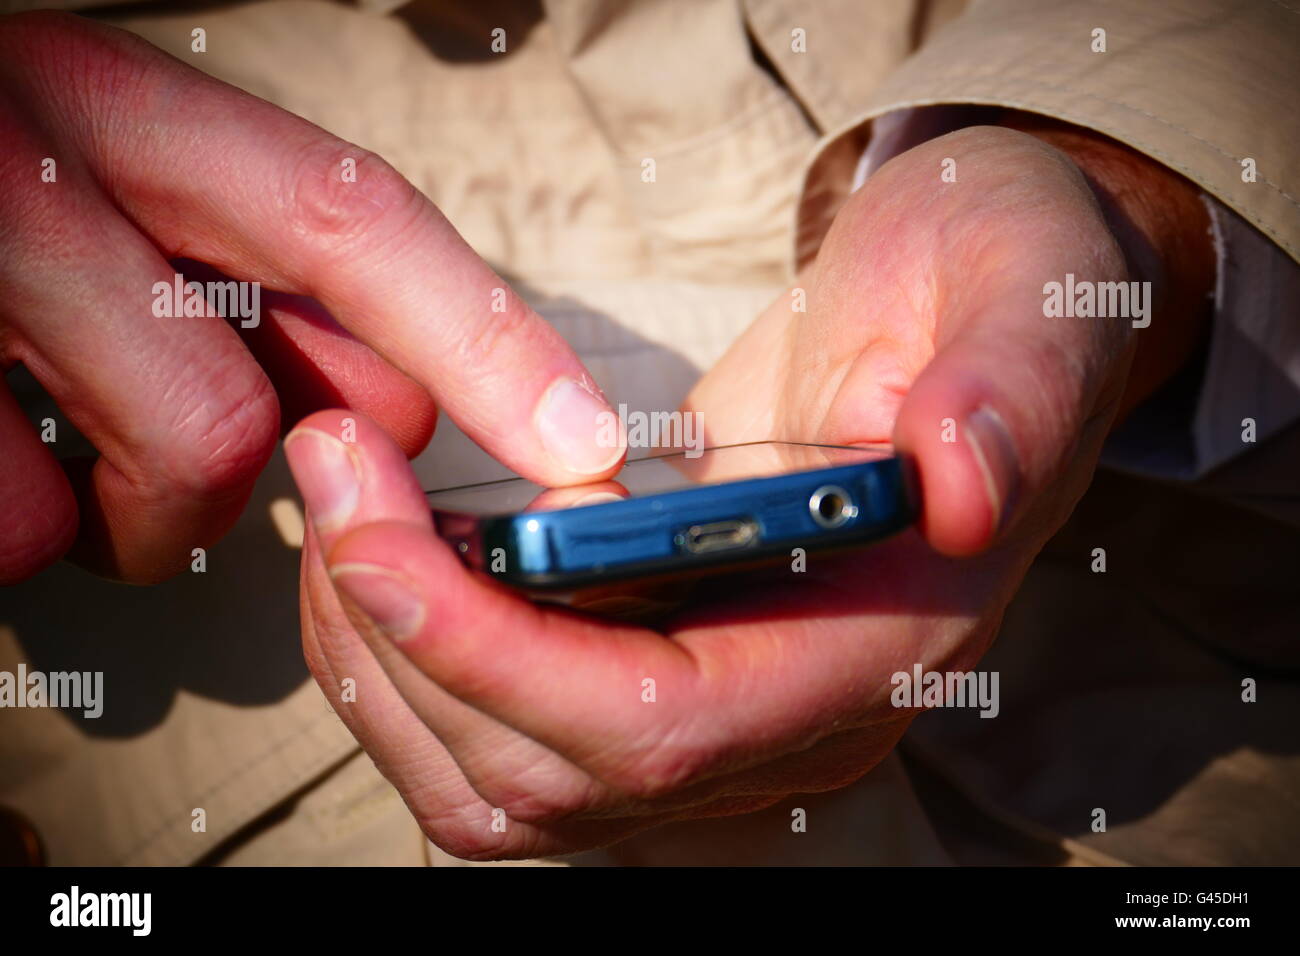 Europa Alemania hombre alemán de control de SMS en el smartphone Foto de stock